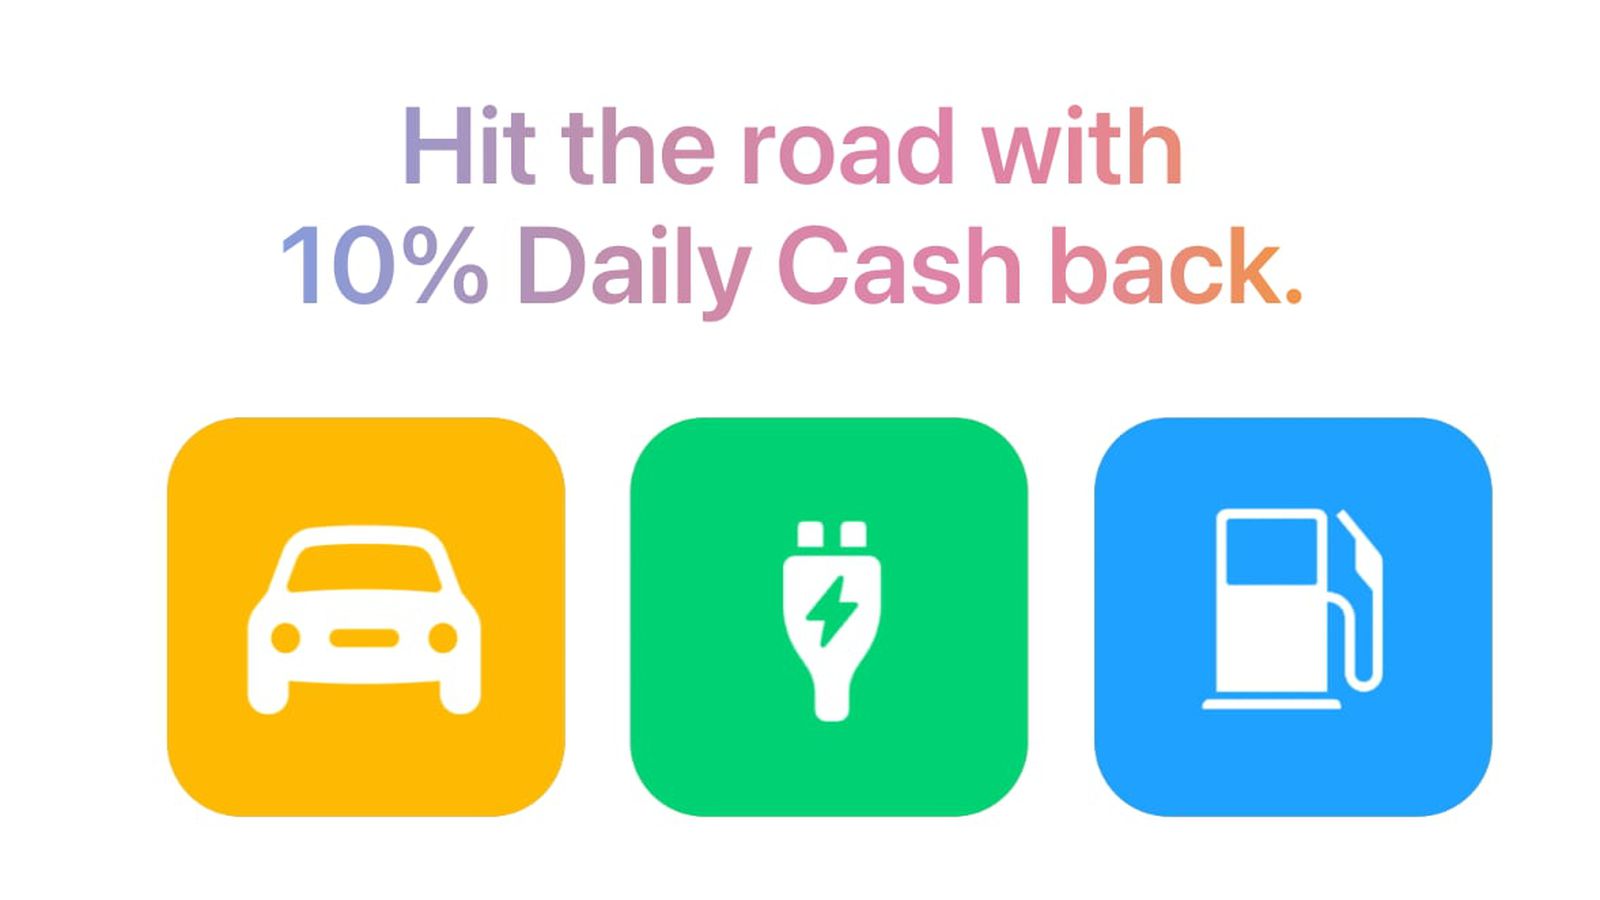 La promoción Apple Card ofrece un reembolso diario del 10% en efectivo en la carga de vehículos eléctricos y de gasolina